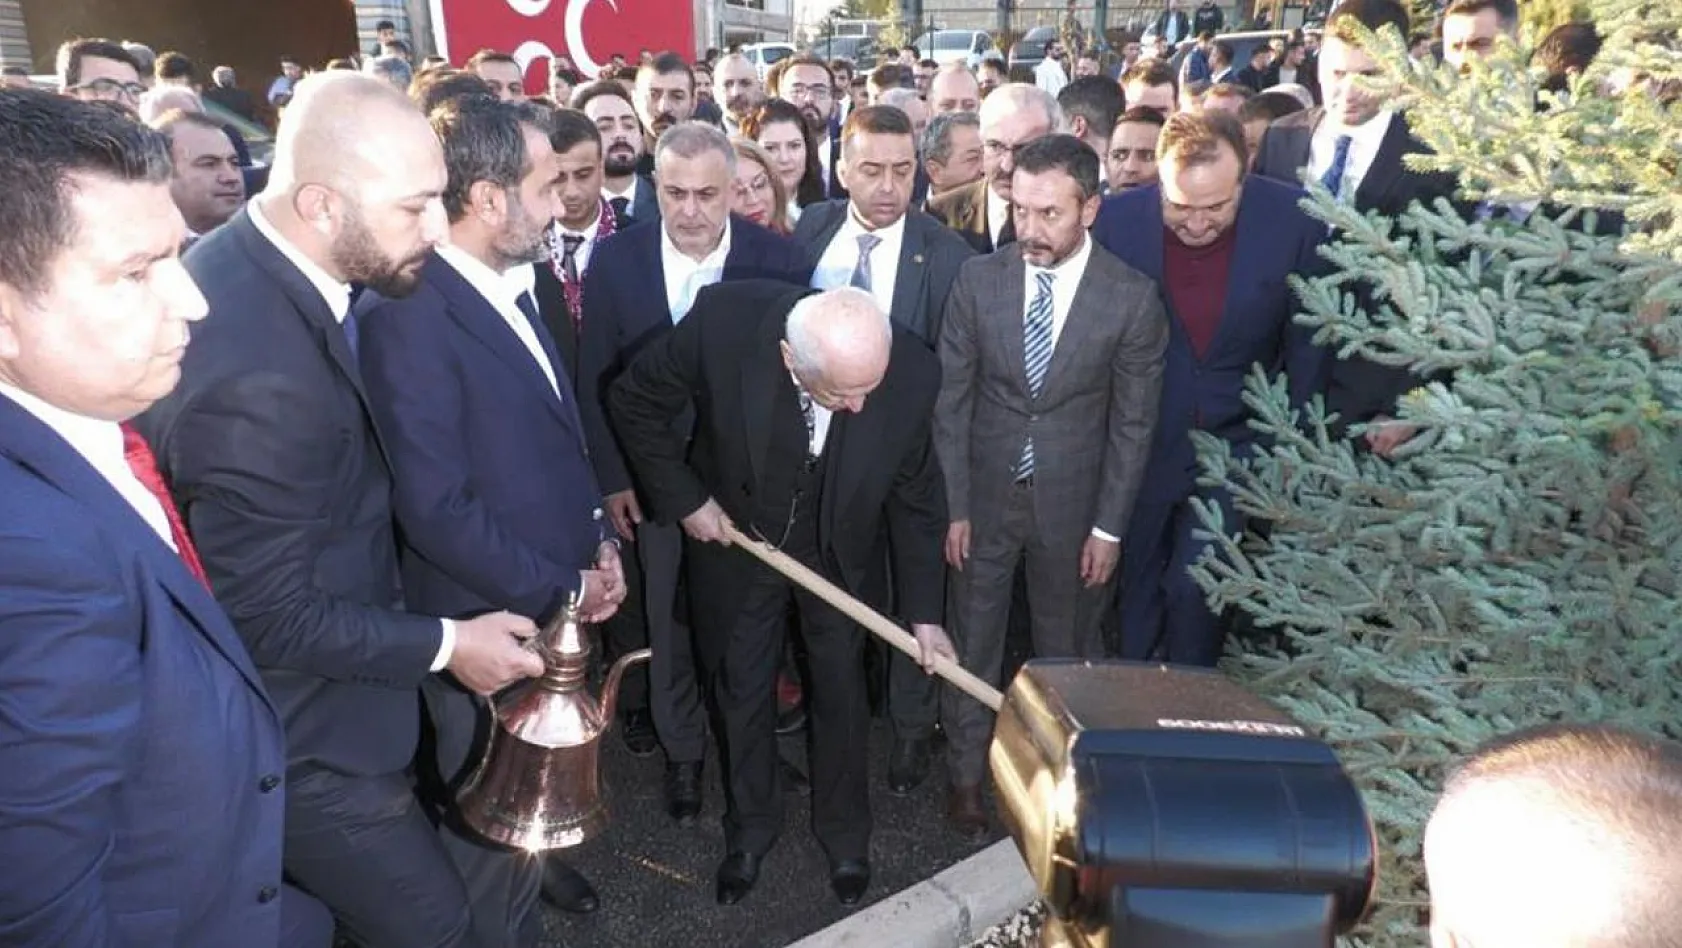 MHP Lideri Devlet Bahçeli, adının verildiği hatıra ormanına fidan dikti